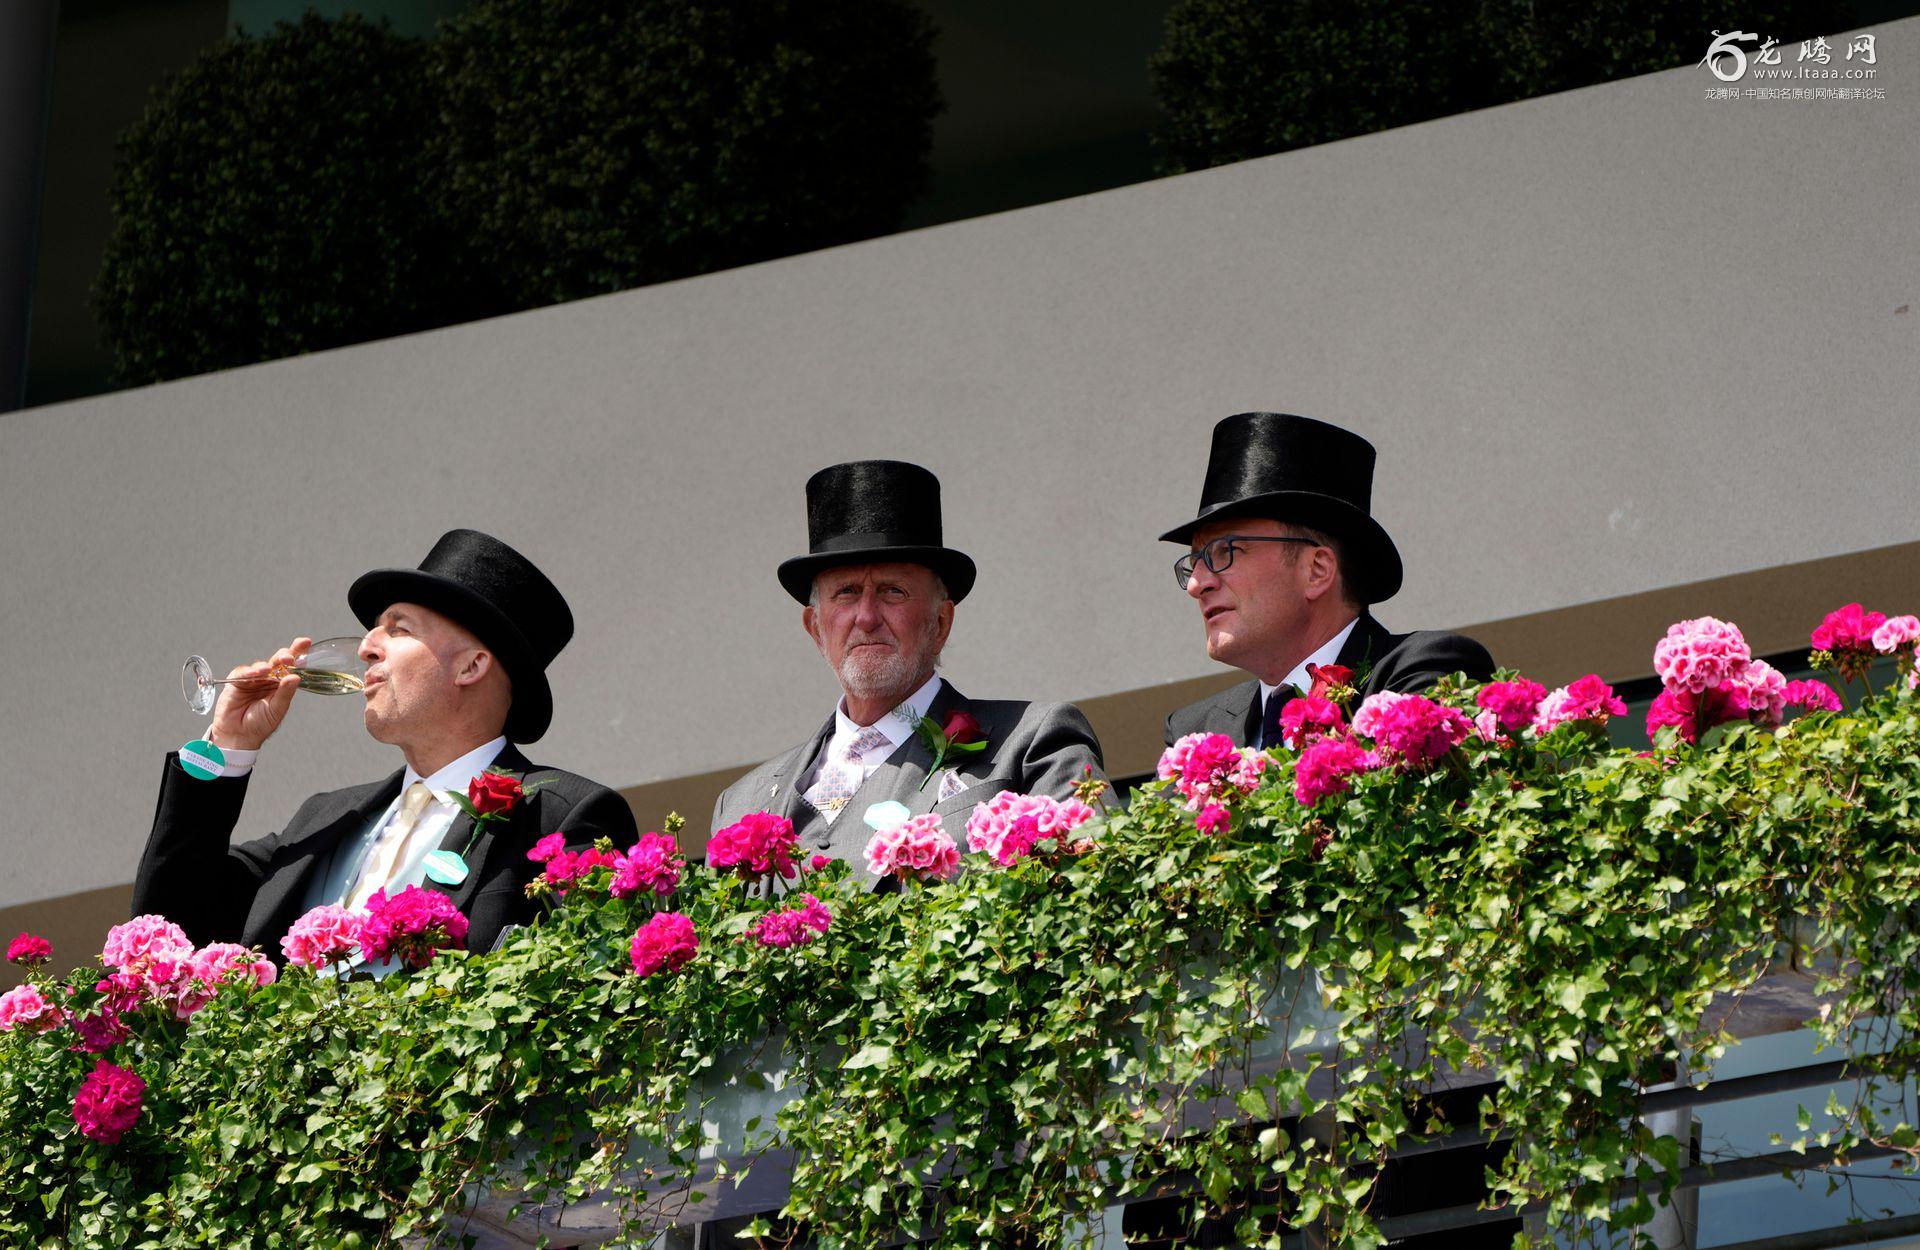 英国皇家赛马会首日图看一场贵族阶层的奢华聚会 - 图说世界 - 龙腾网